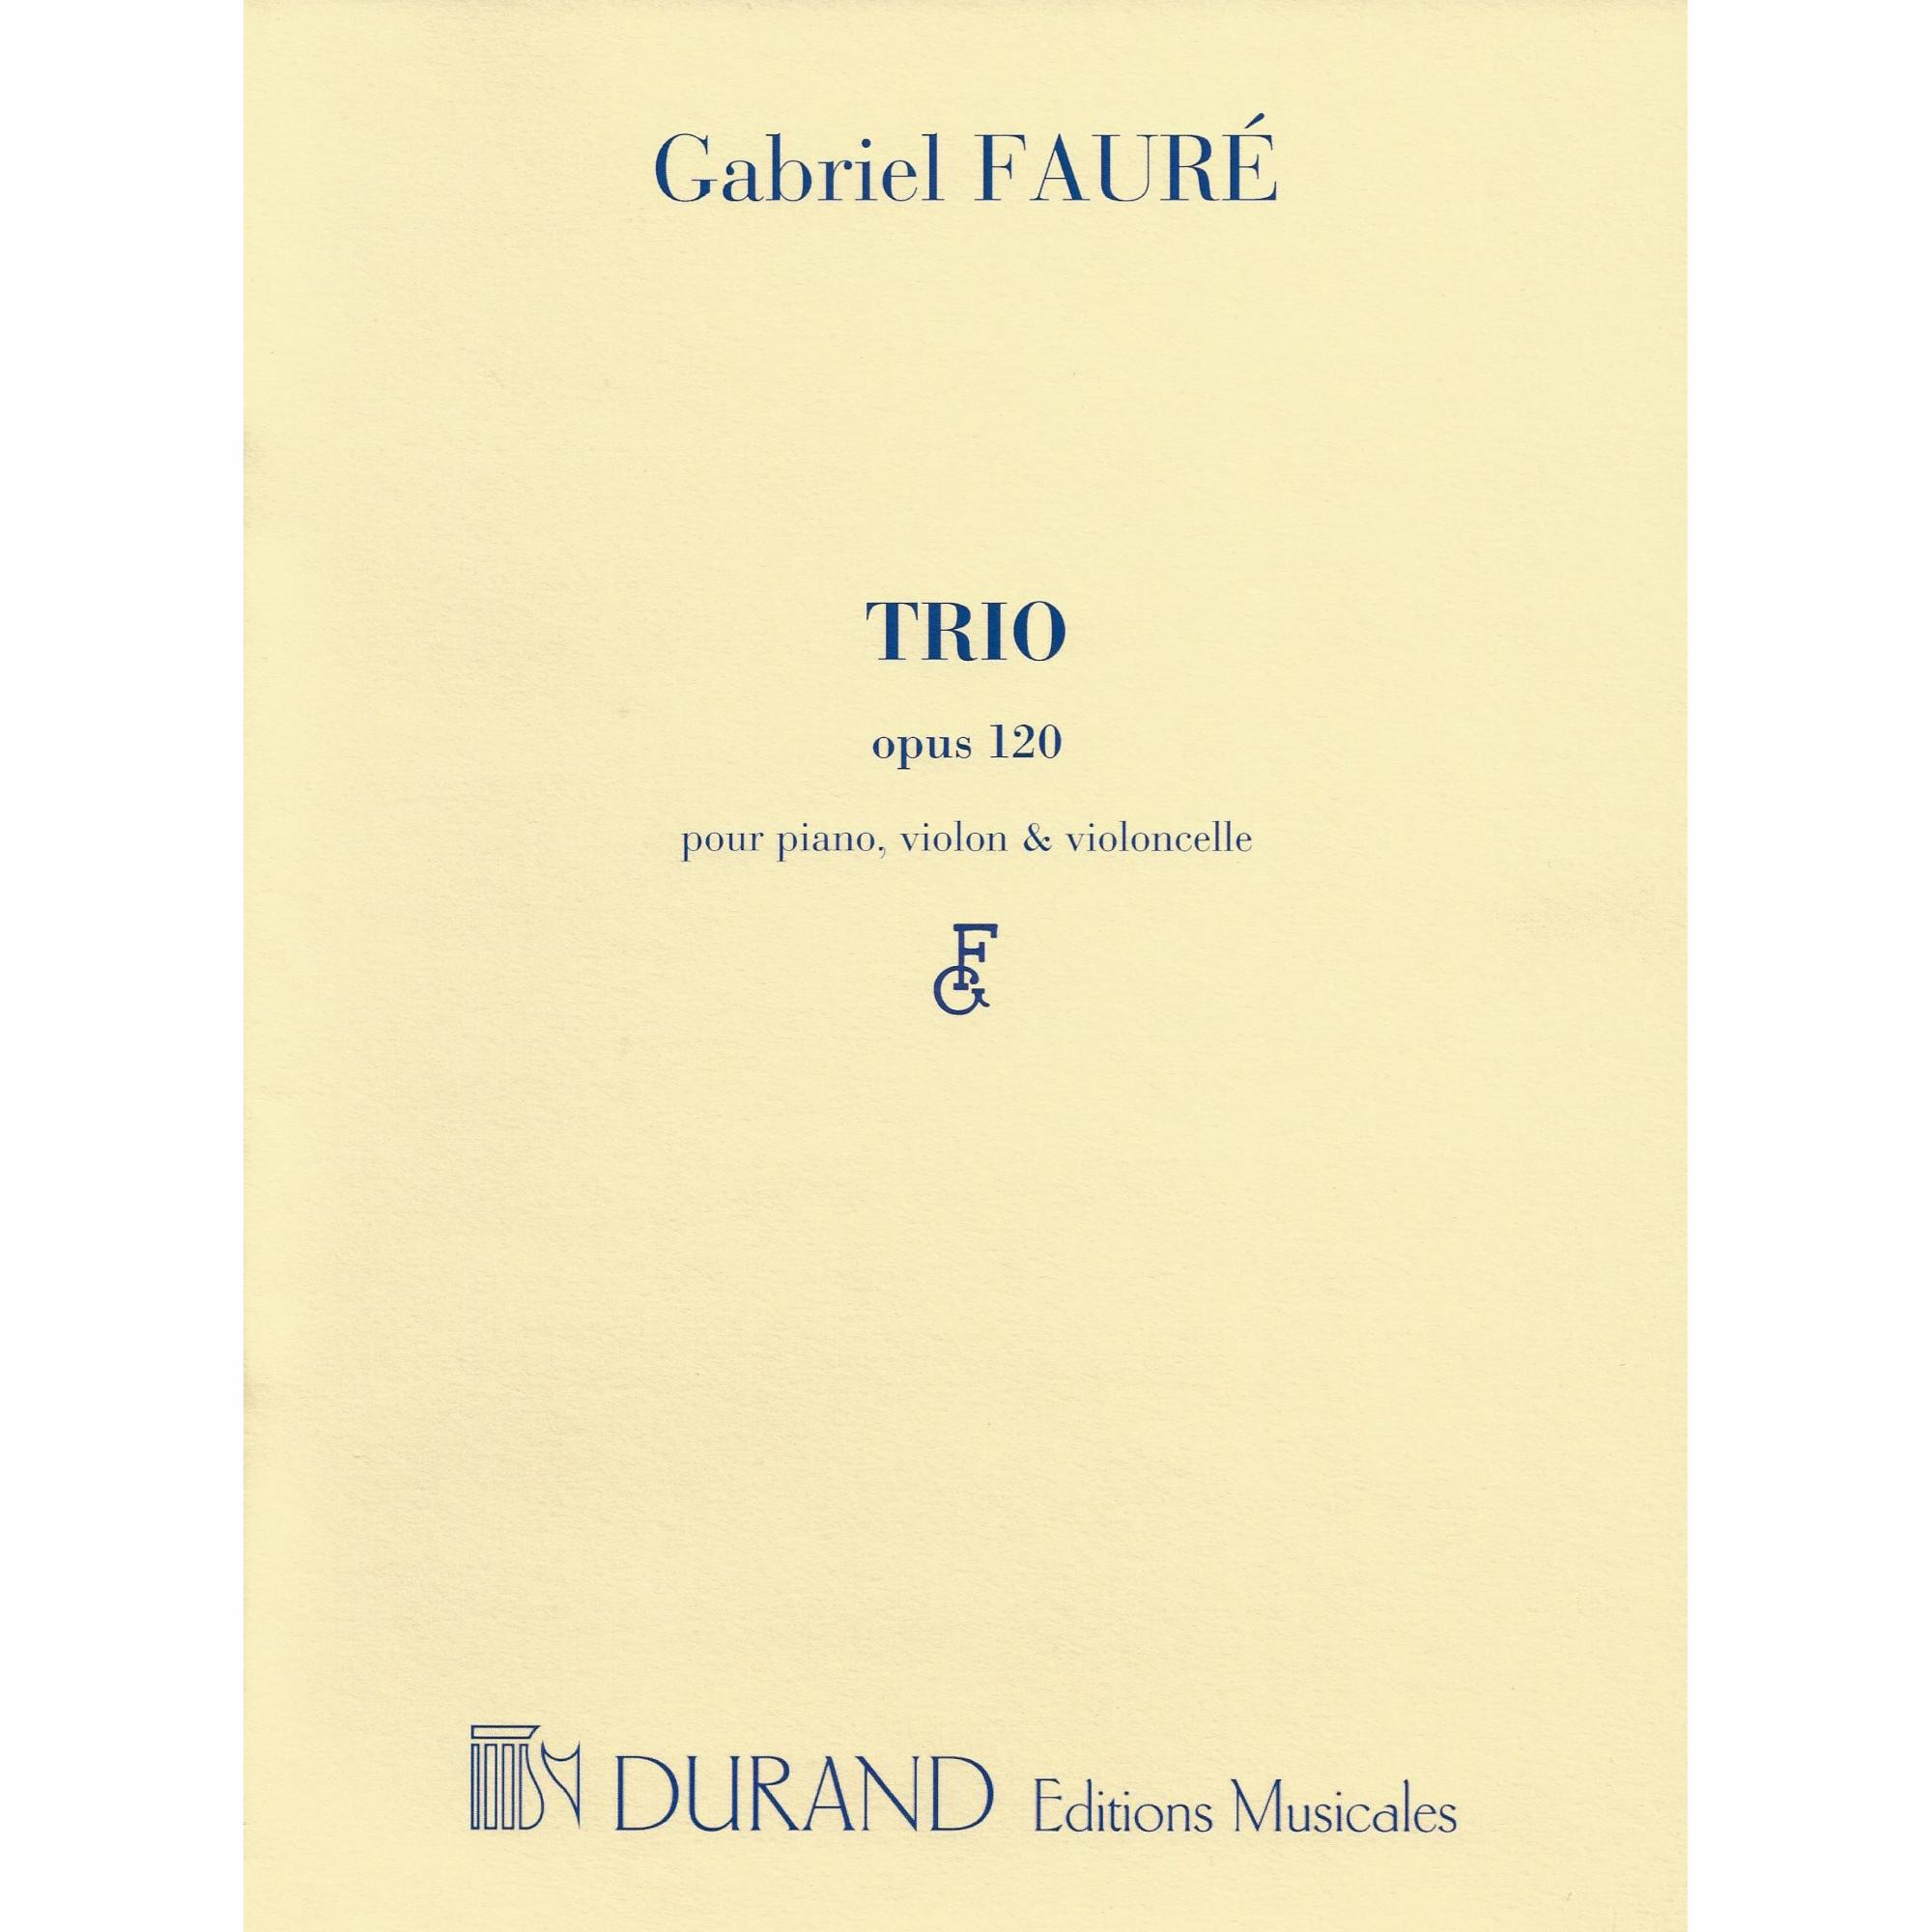 Faure -- Trio, Op. 120 for Violin, Cello, and Piano